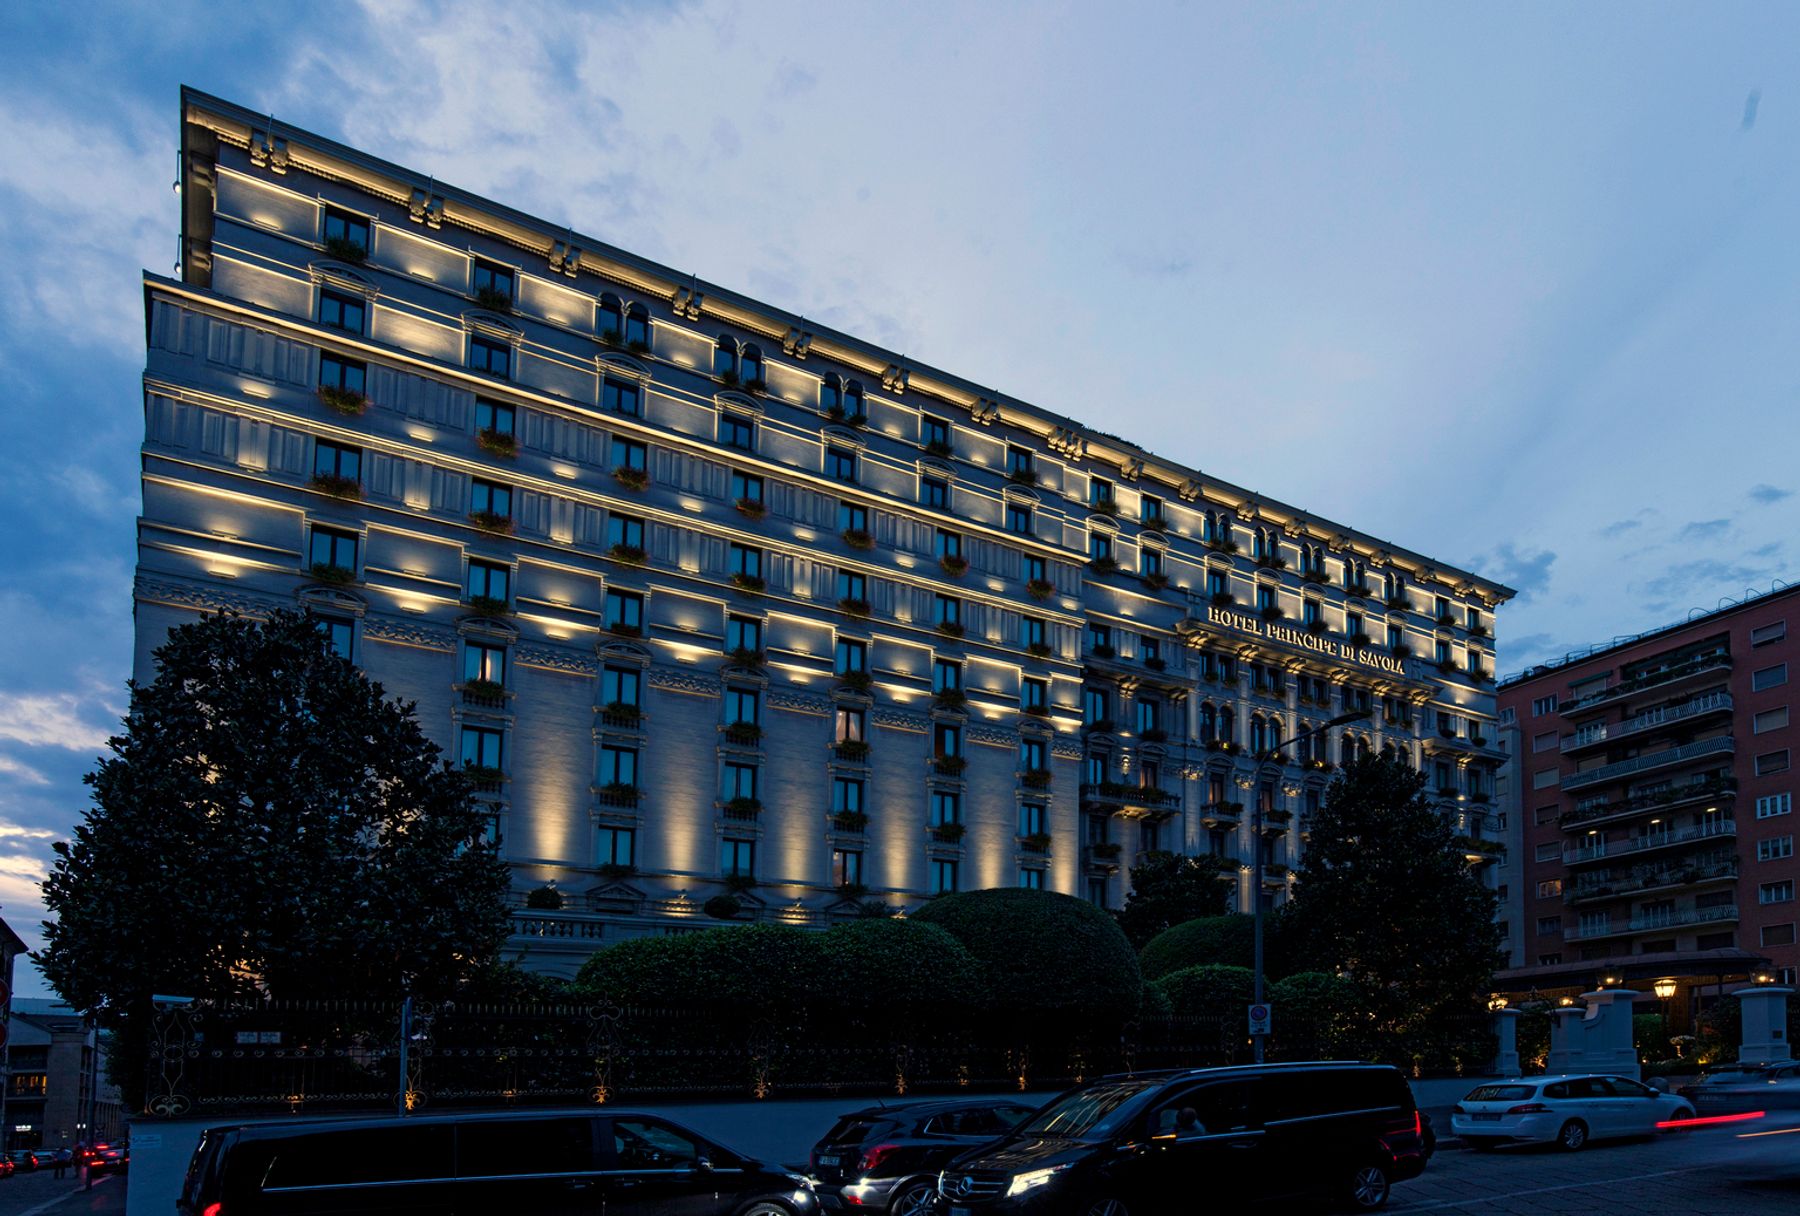 Hotel Principe di Savoia, Mailand. Architektur: Cesare Tenca. Lichtplanung: Marco Nereo Rotelli, Mailand. Fotografie: Dirk Vogel, Altena.